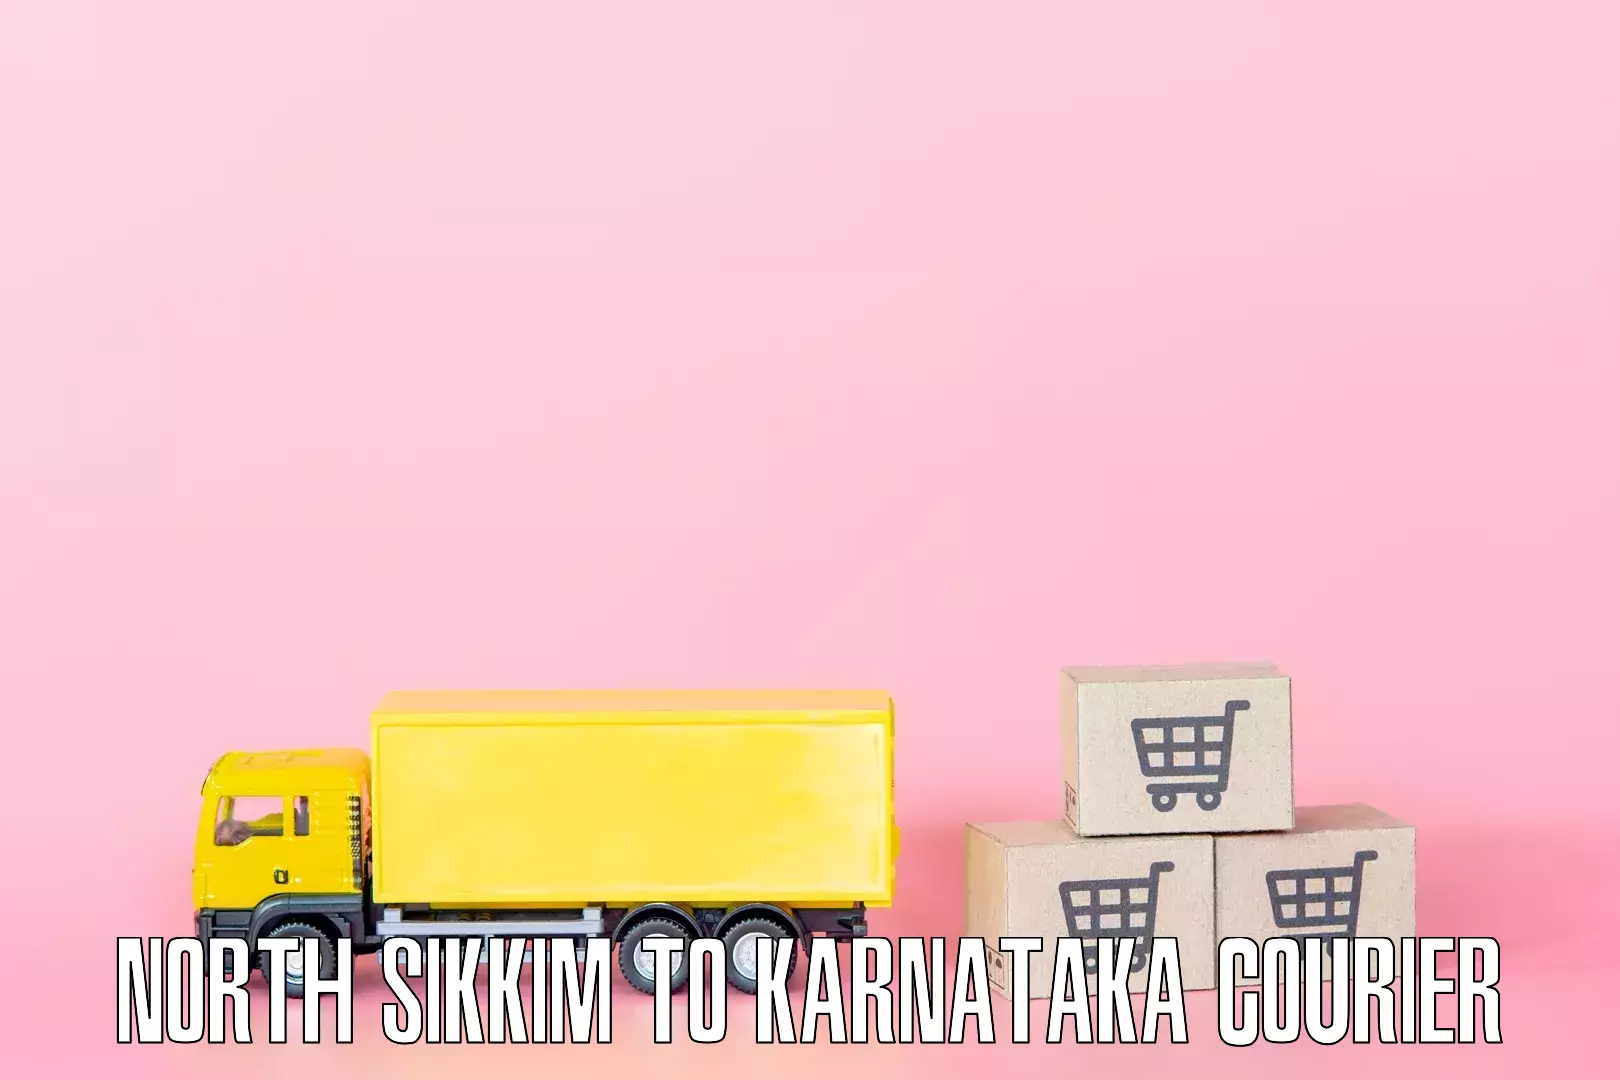 Quick household relocation North Sikkim to Karnataka